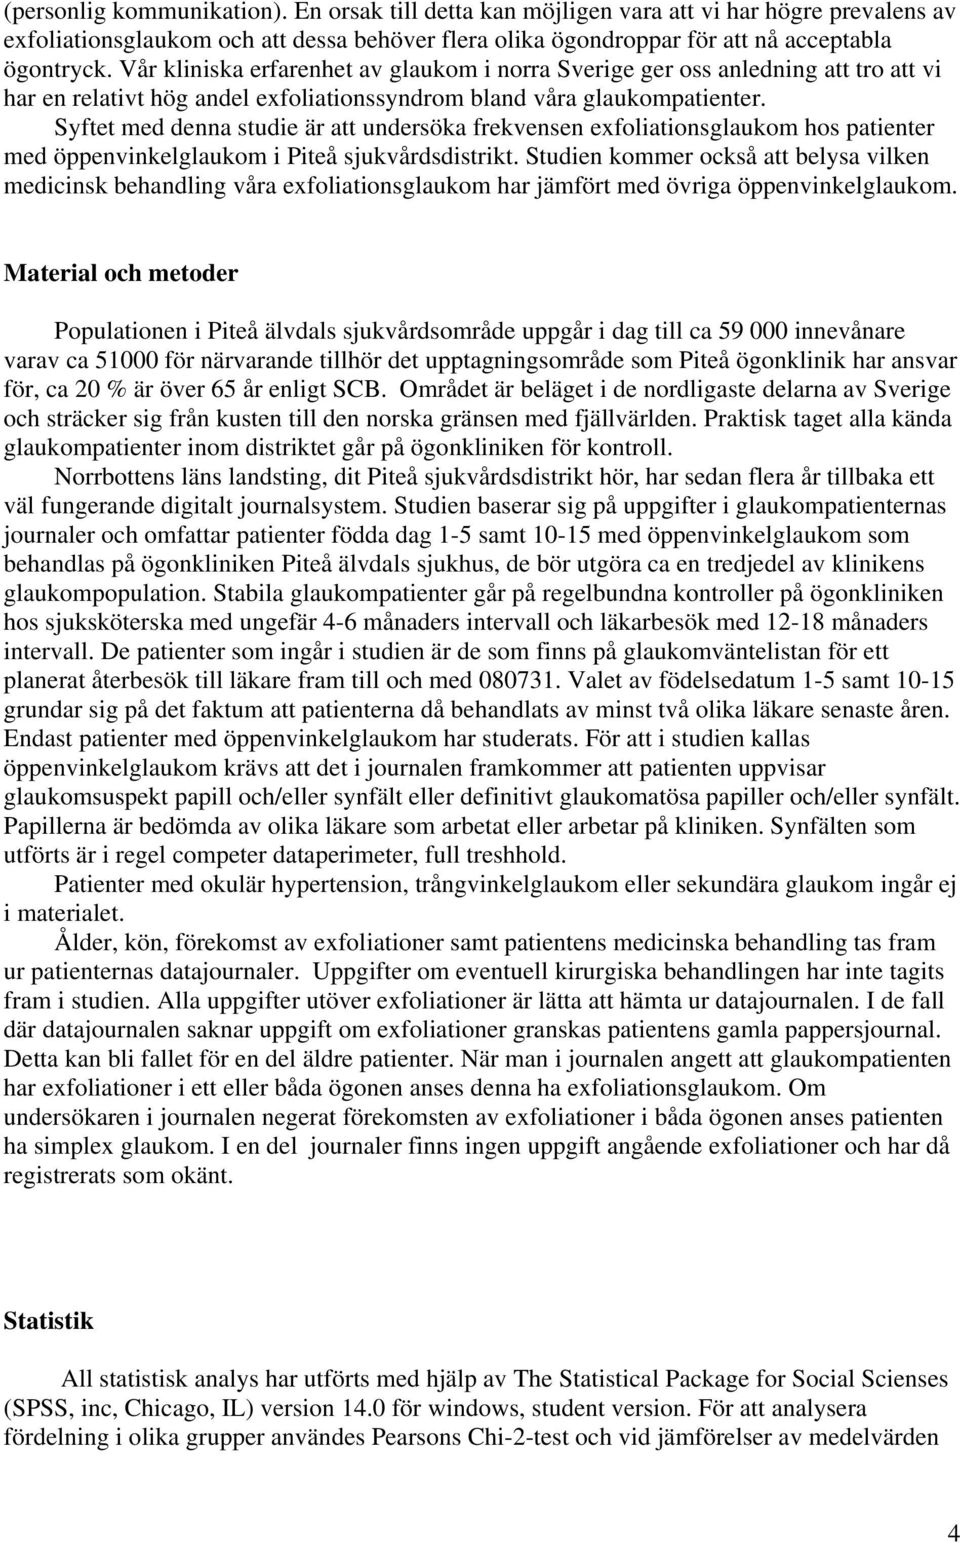 Syftet med denna studie är att undersöka frekvensen exfoliationsglaukom hos patienter med öppenvinkelglaukom i Piteå sjukvårdsdistrikt.